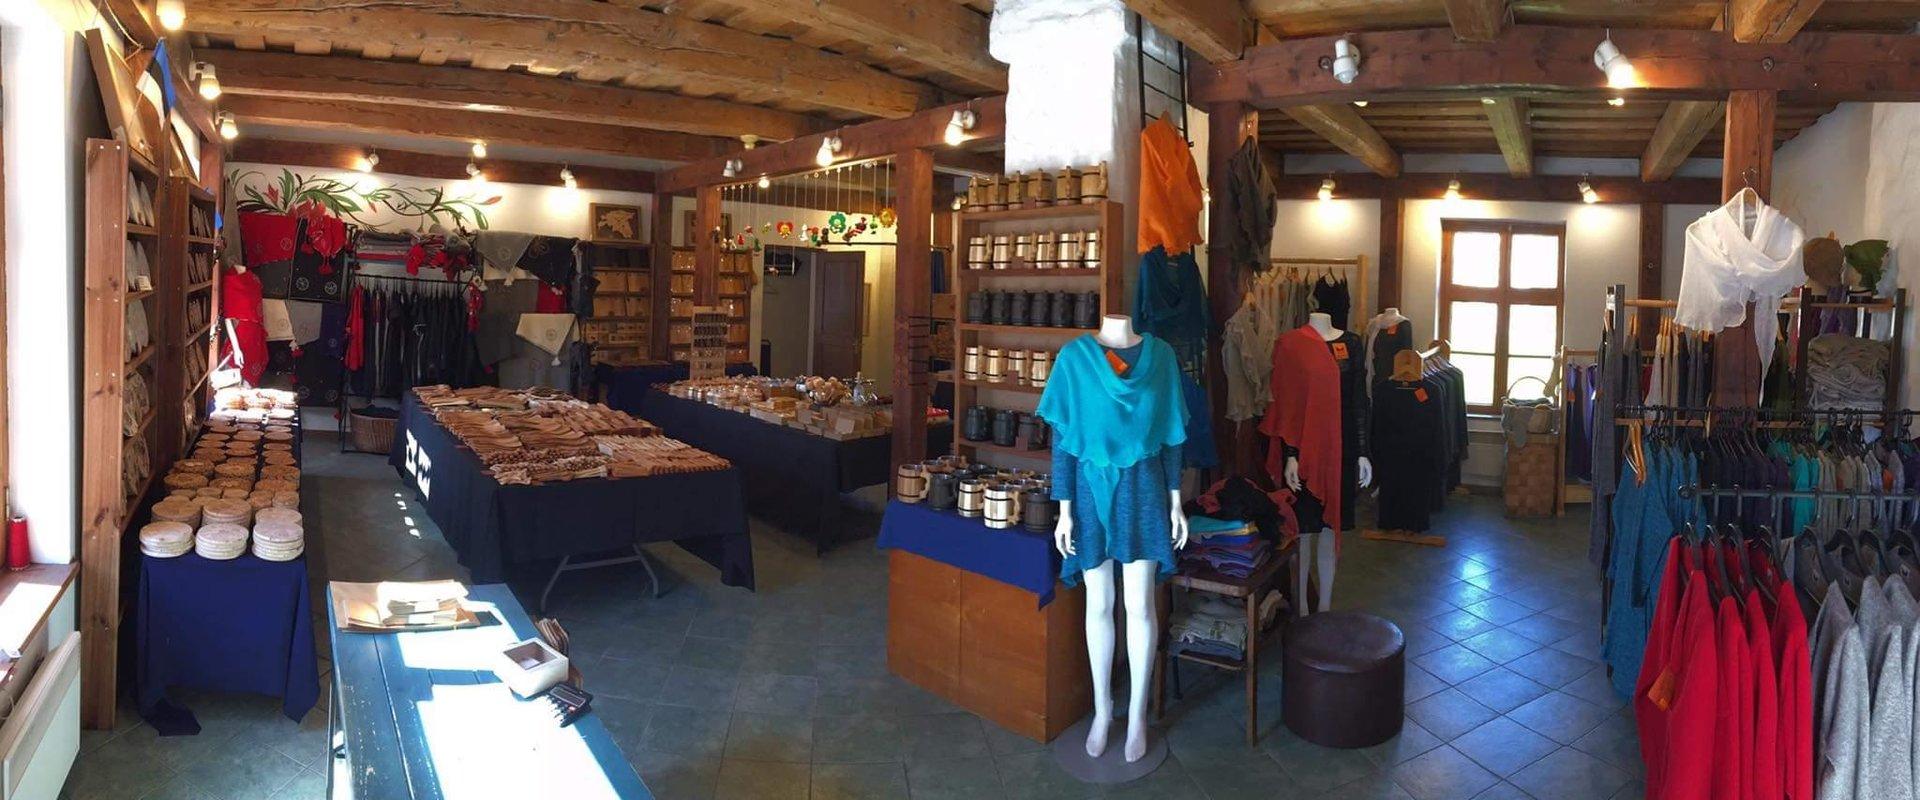 Handicraft shop Mirimart in Haapsalu